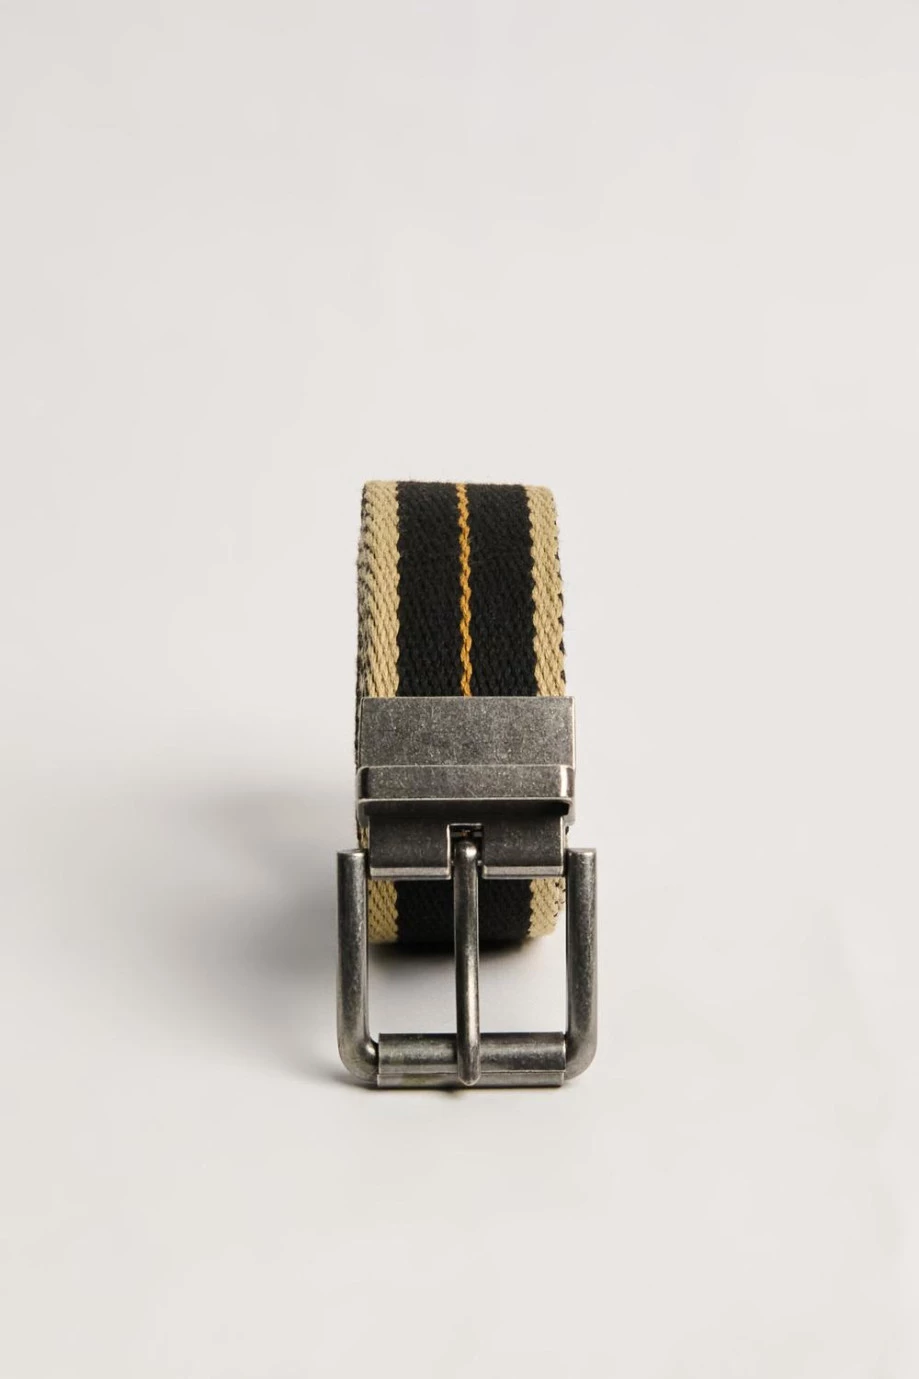 cinturón masculino reversible para hombre, con hebilla cuadrada en color negro, azul y café oscuro. Con bordes en color kaki